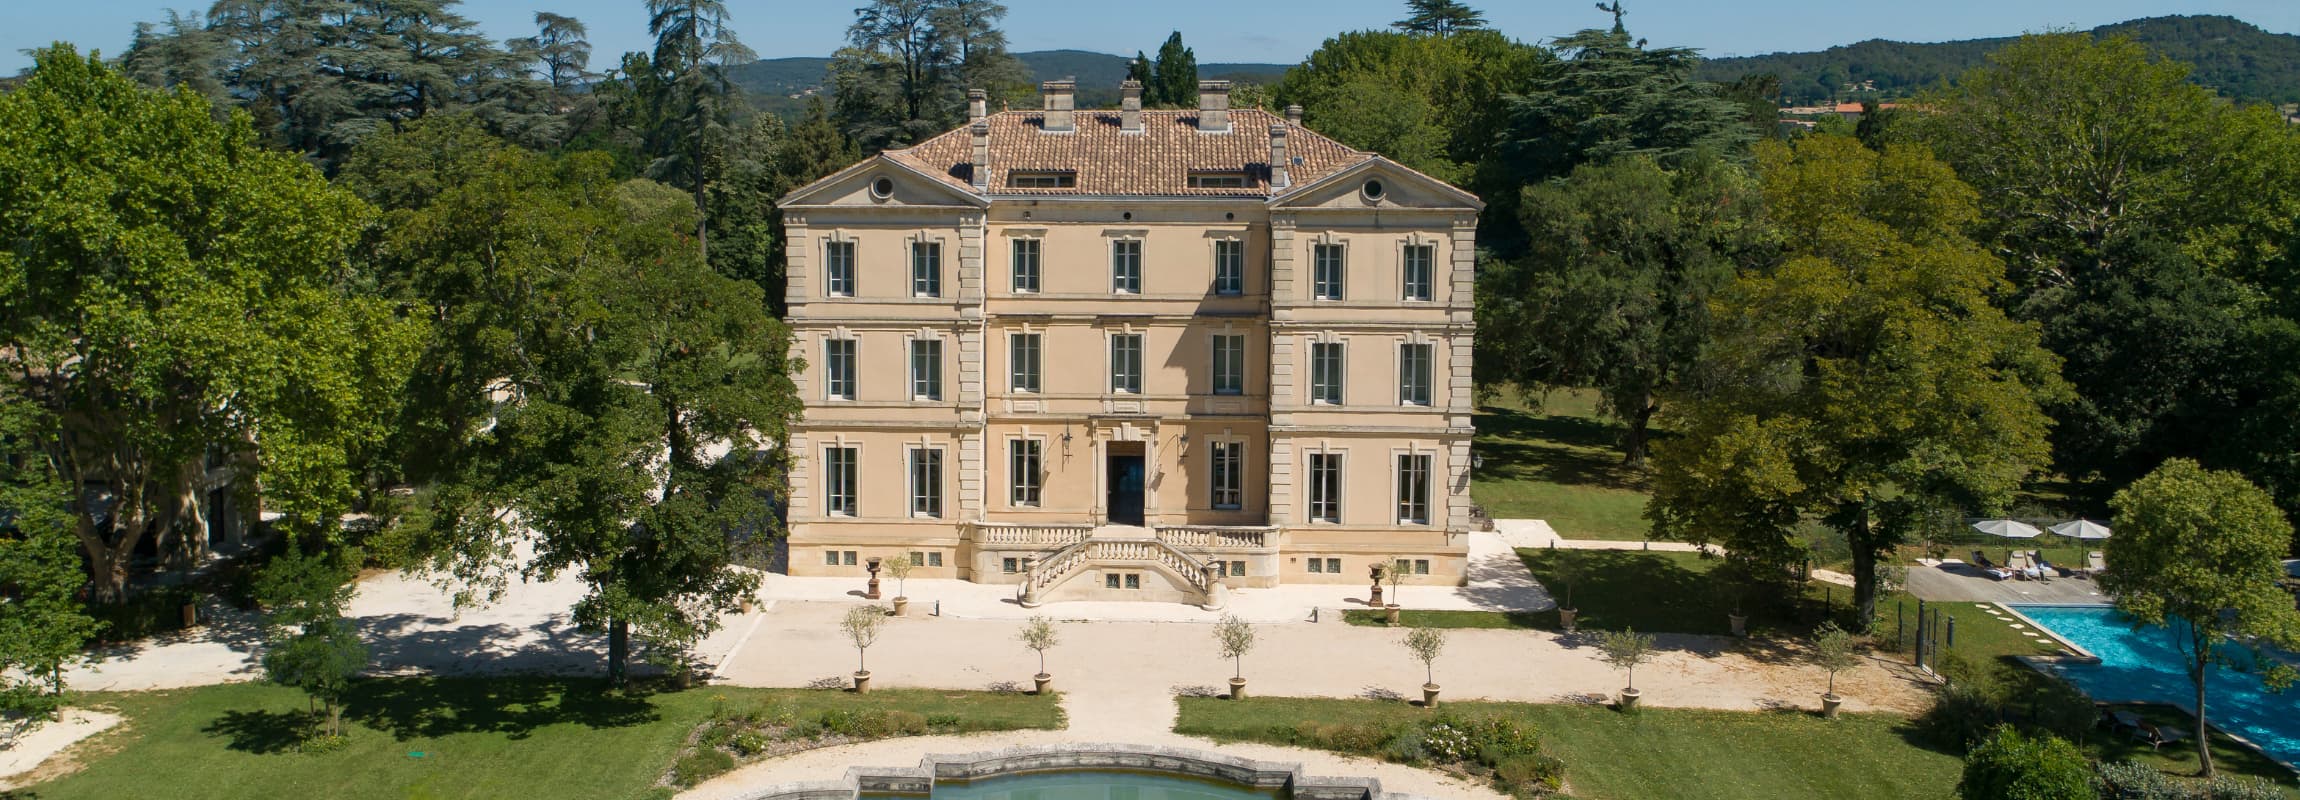 Château de Montcaud, Schlosshotel in der Provence, Südfrankreich